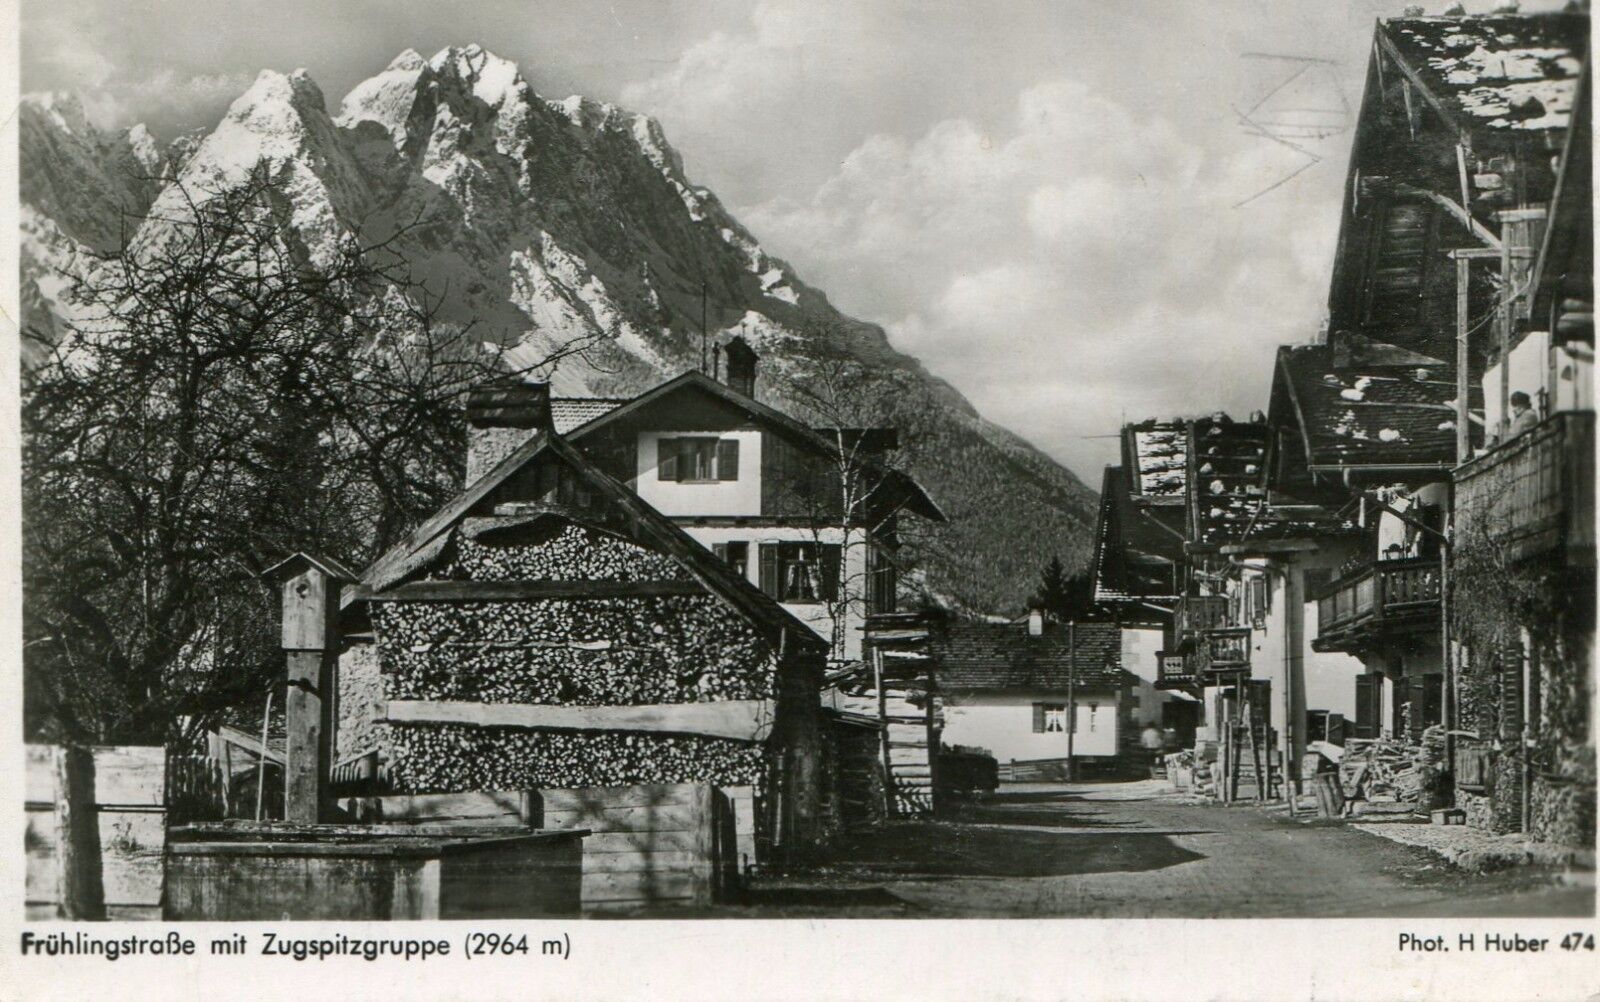 Germany AK Garmisch-Partenkirchen 82467 1952 Cover  10 pf Postal Horn postcard